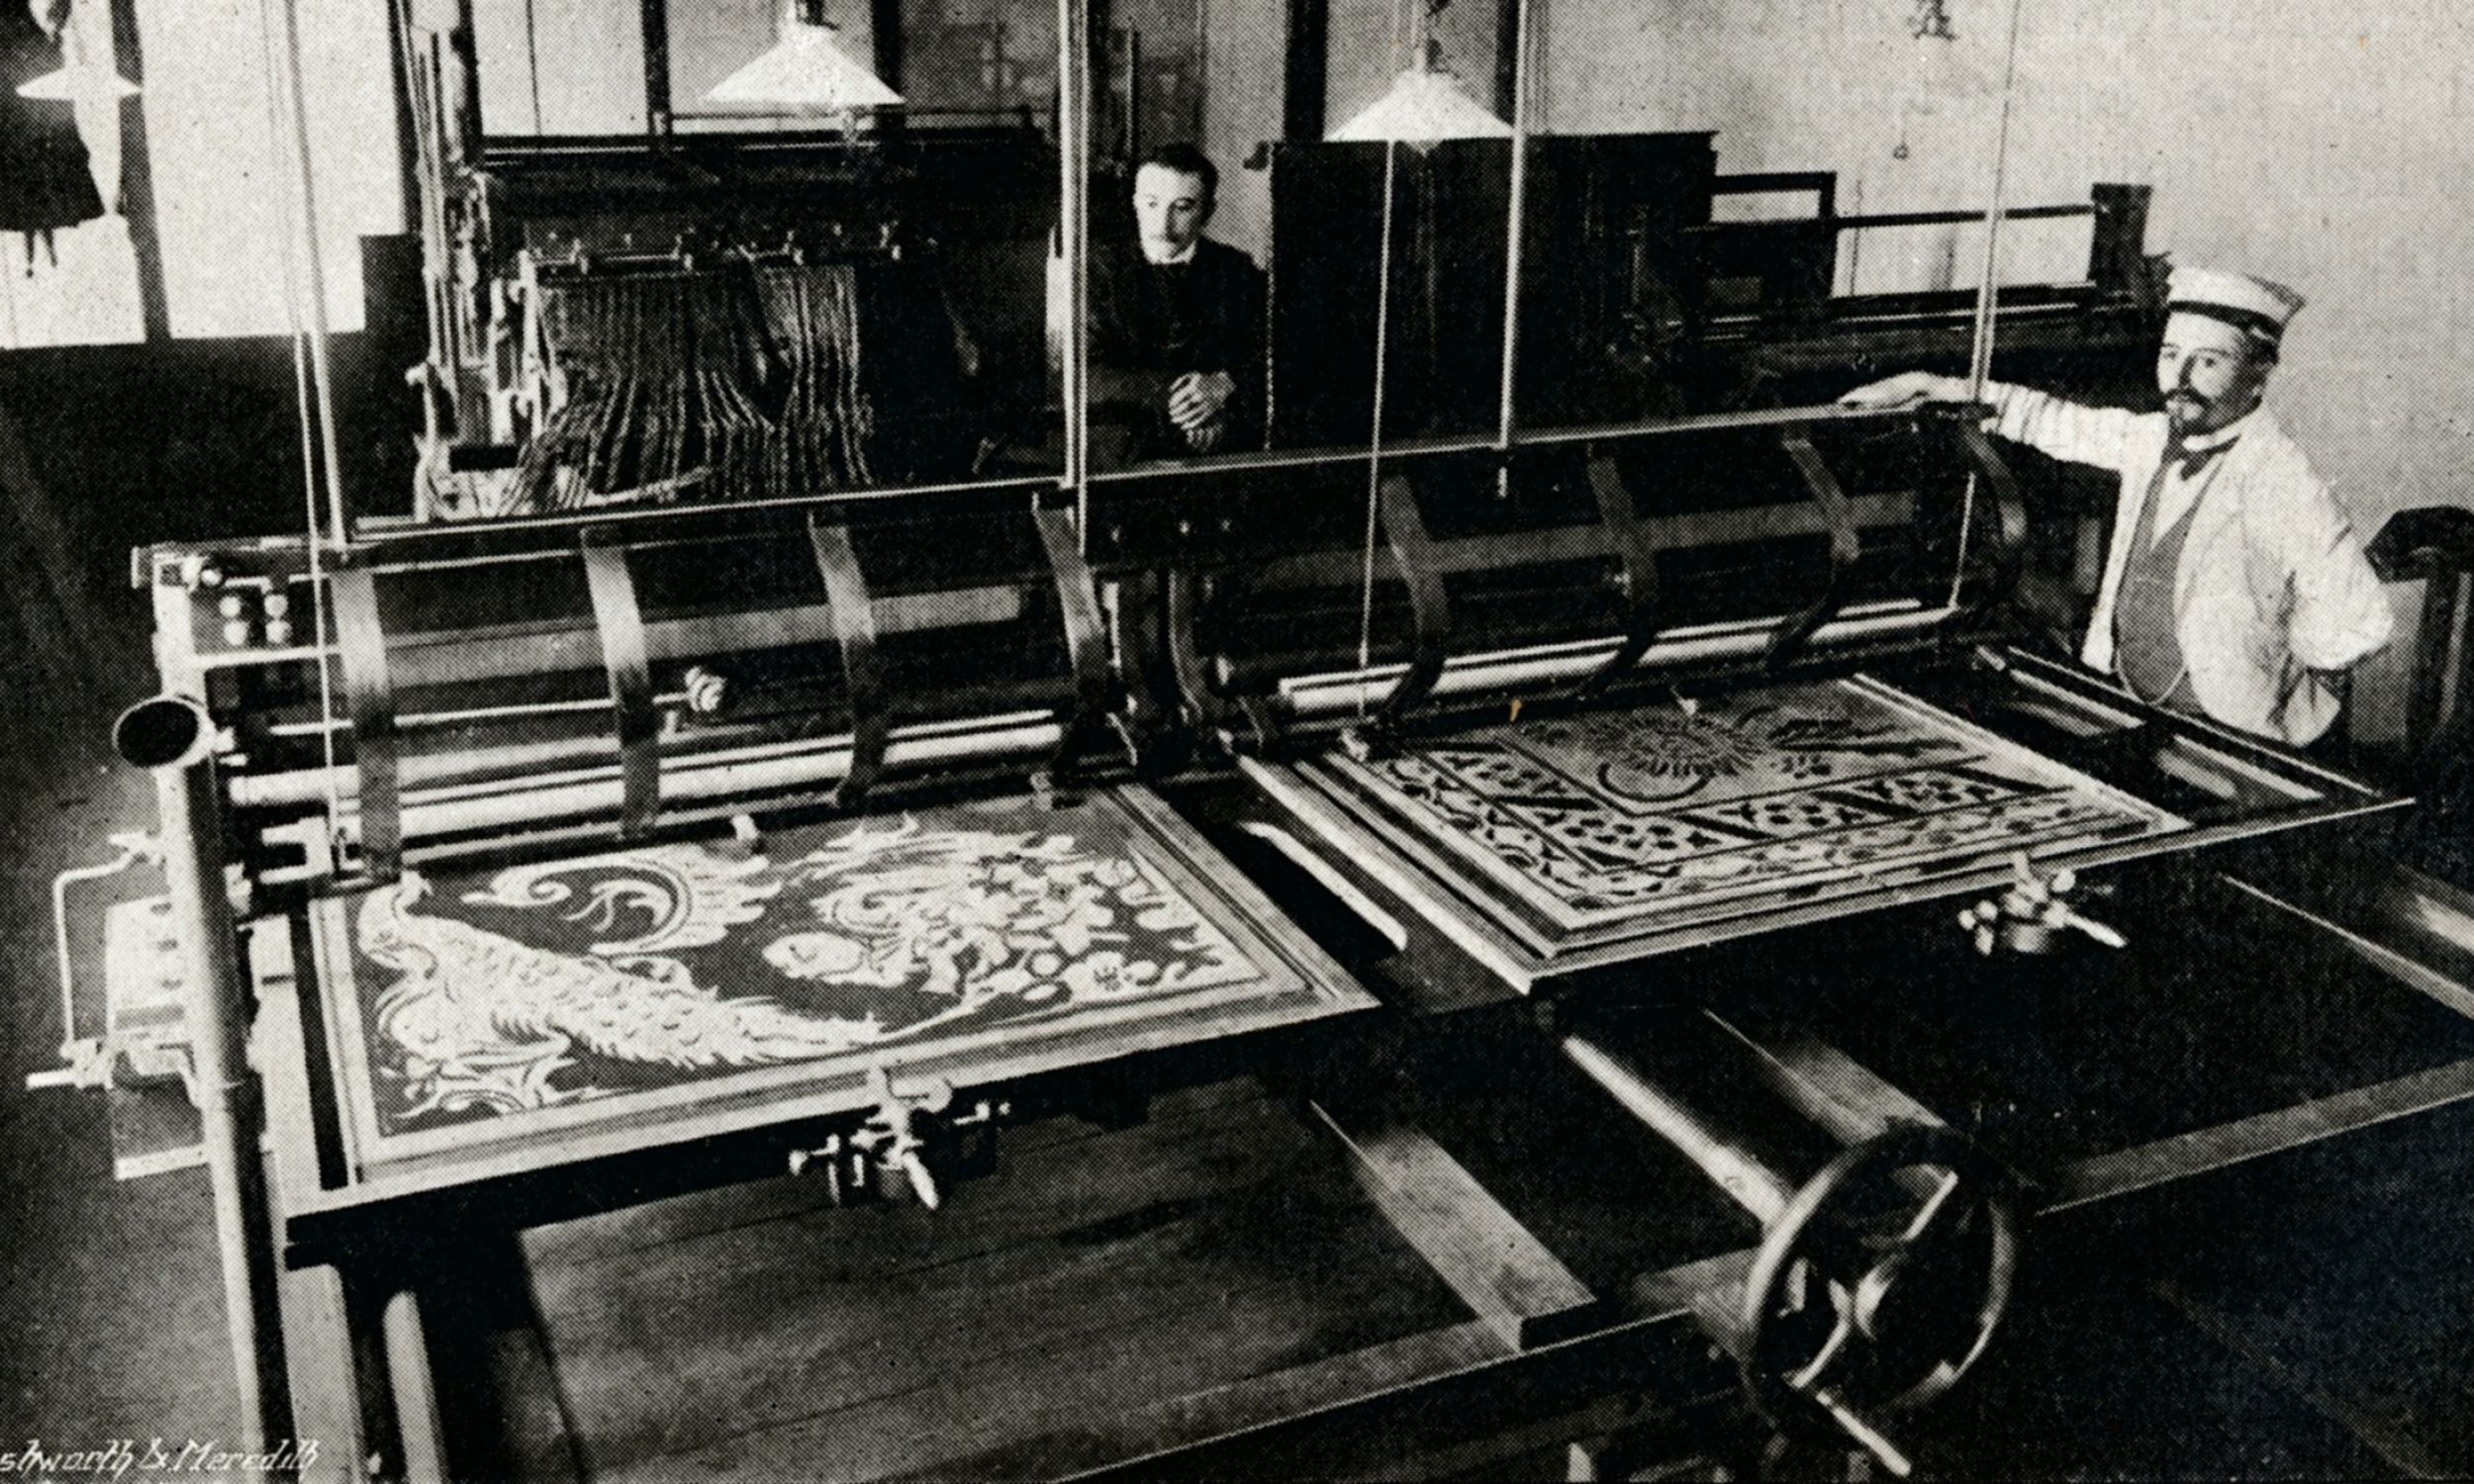 Elektryczna maszyna do cięcia kart Szczepanika, c1903. Z Penrose's Pictorial Annual 1903-4, pod redakcją Williama Gamble'a. [ZA. W. Penrose & Co., London, 1903-4]. Fot.: The Print Collector / Getty Images